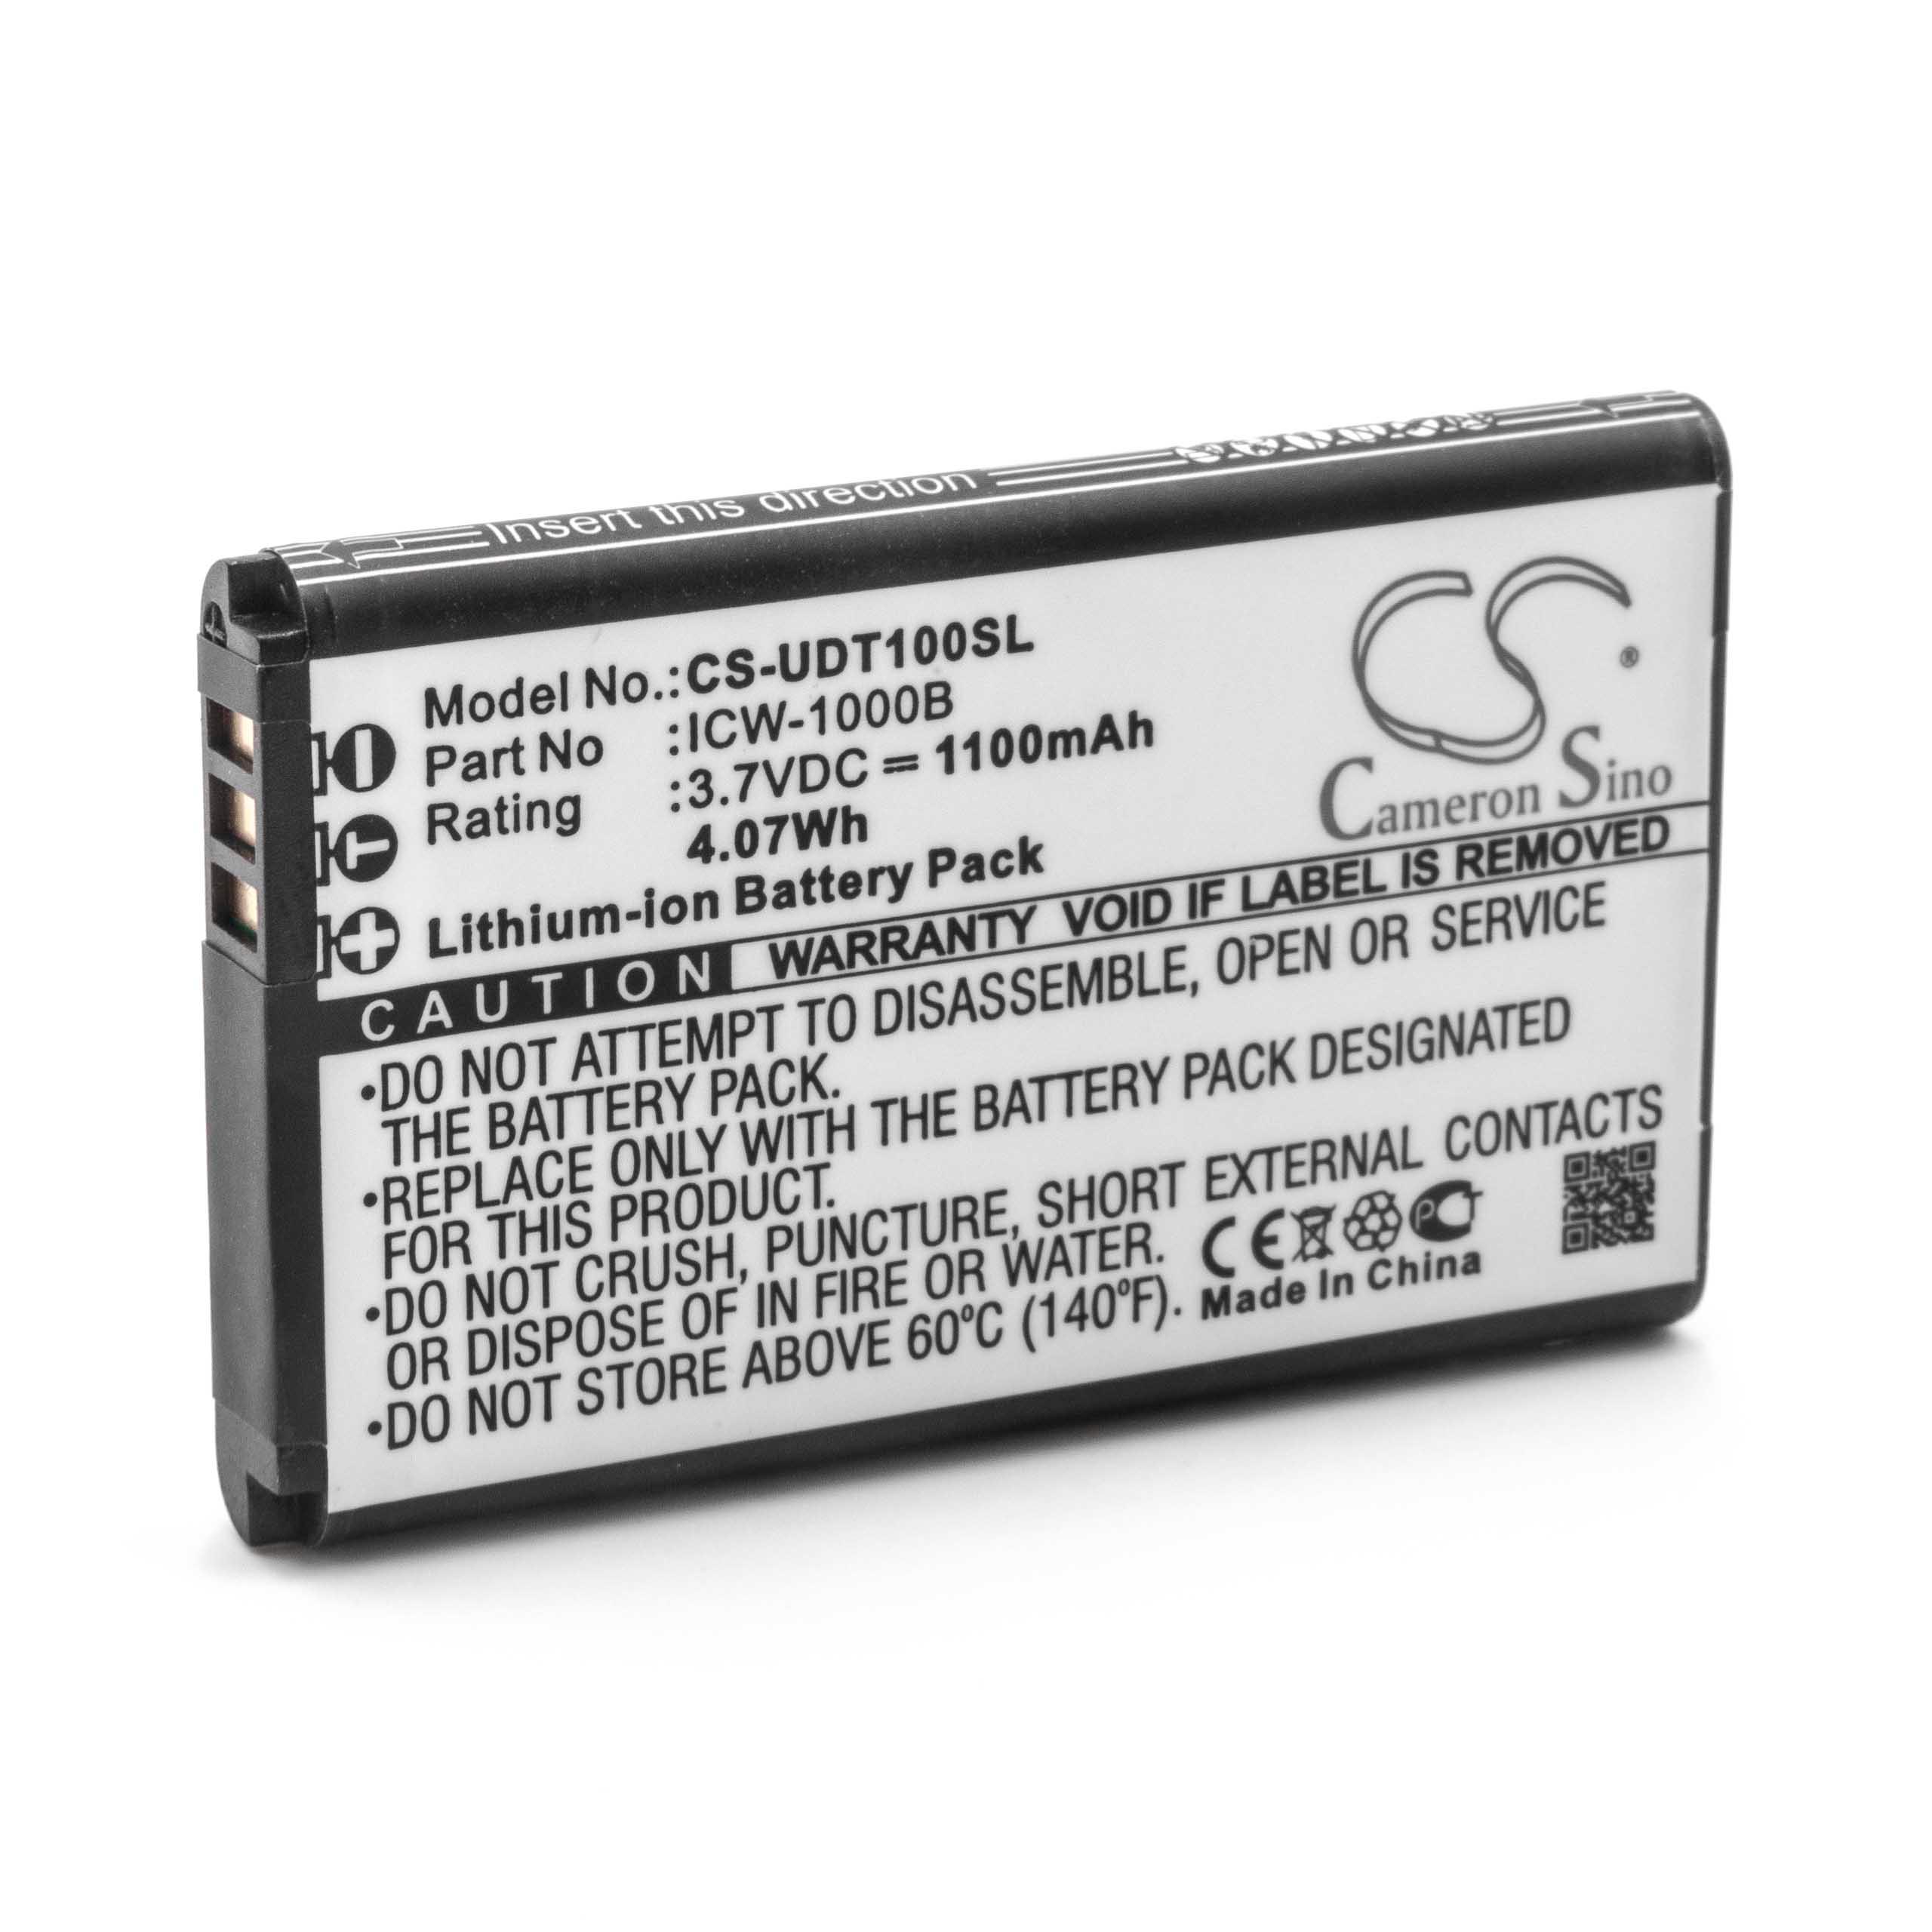 Batterie remplace UniData / Incom ICW-1000B, KAL523450AR pour téléphone - 1100mAh 3,7V Li-ion